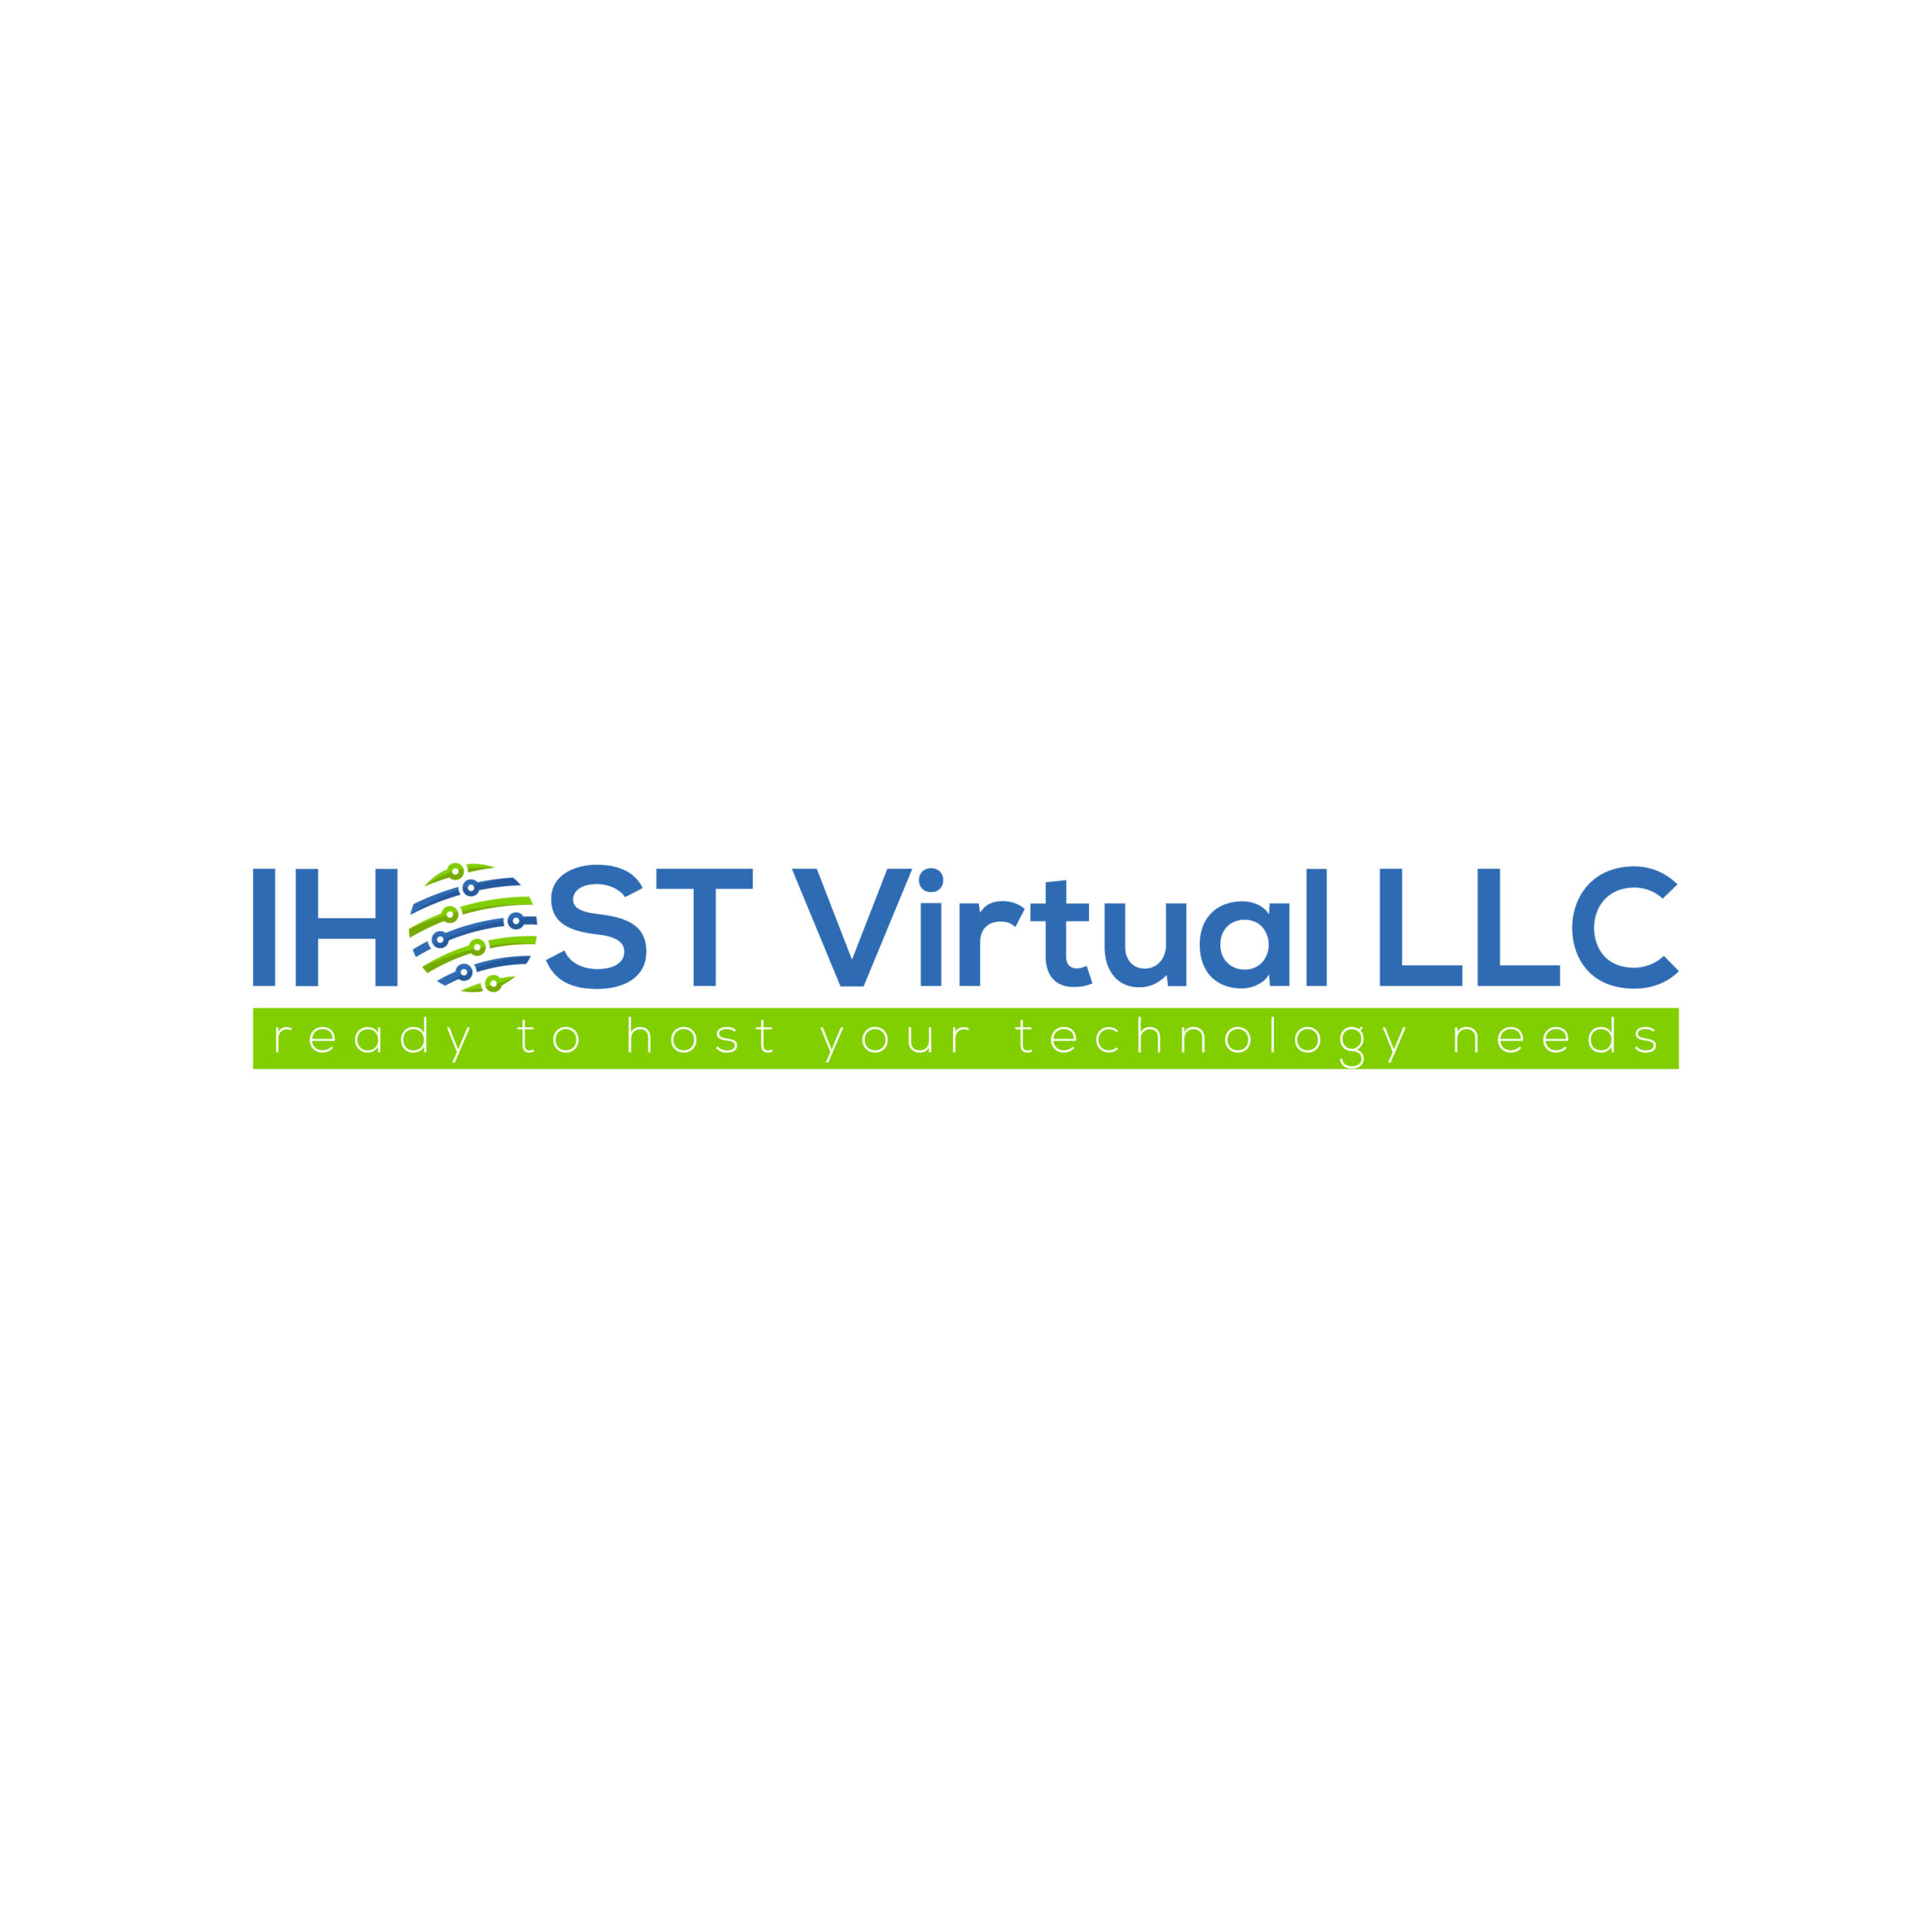 IHOST VIRTUAL LLC